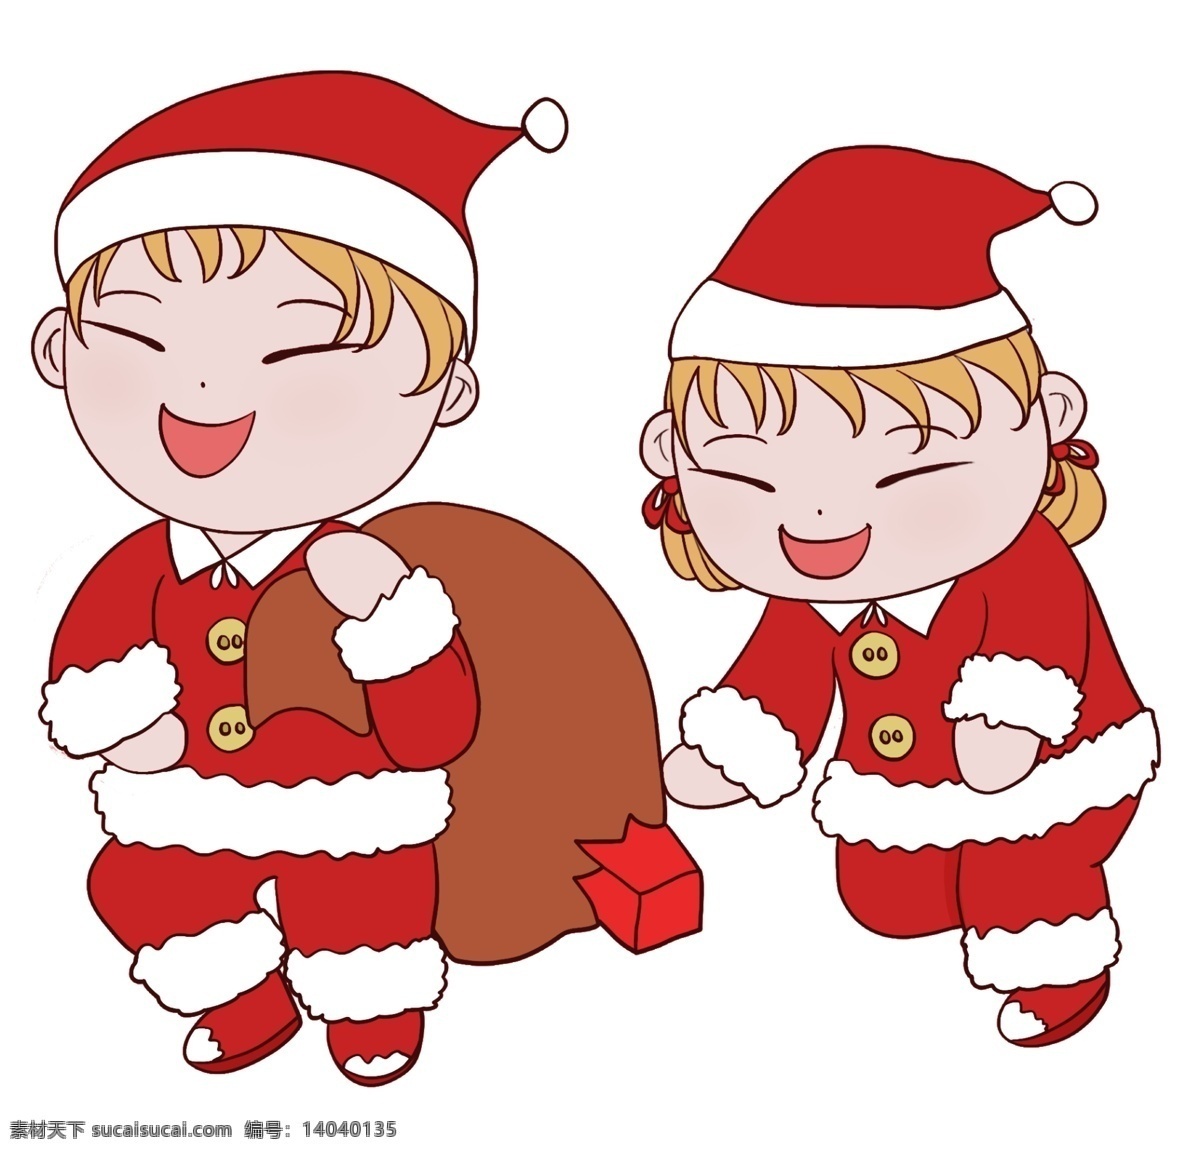 圣诞节 可爱 儿童 人物 插画 可爱儿童 大礼袋 圣诞节服装 圣诞帽 红色圣诞节 喜庆圣诞节 卡通